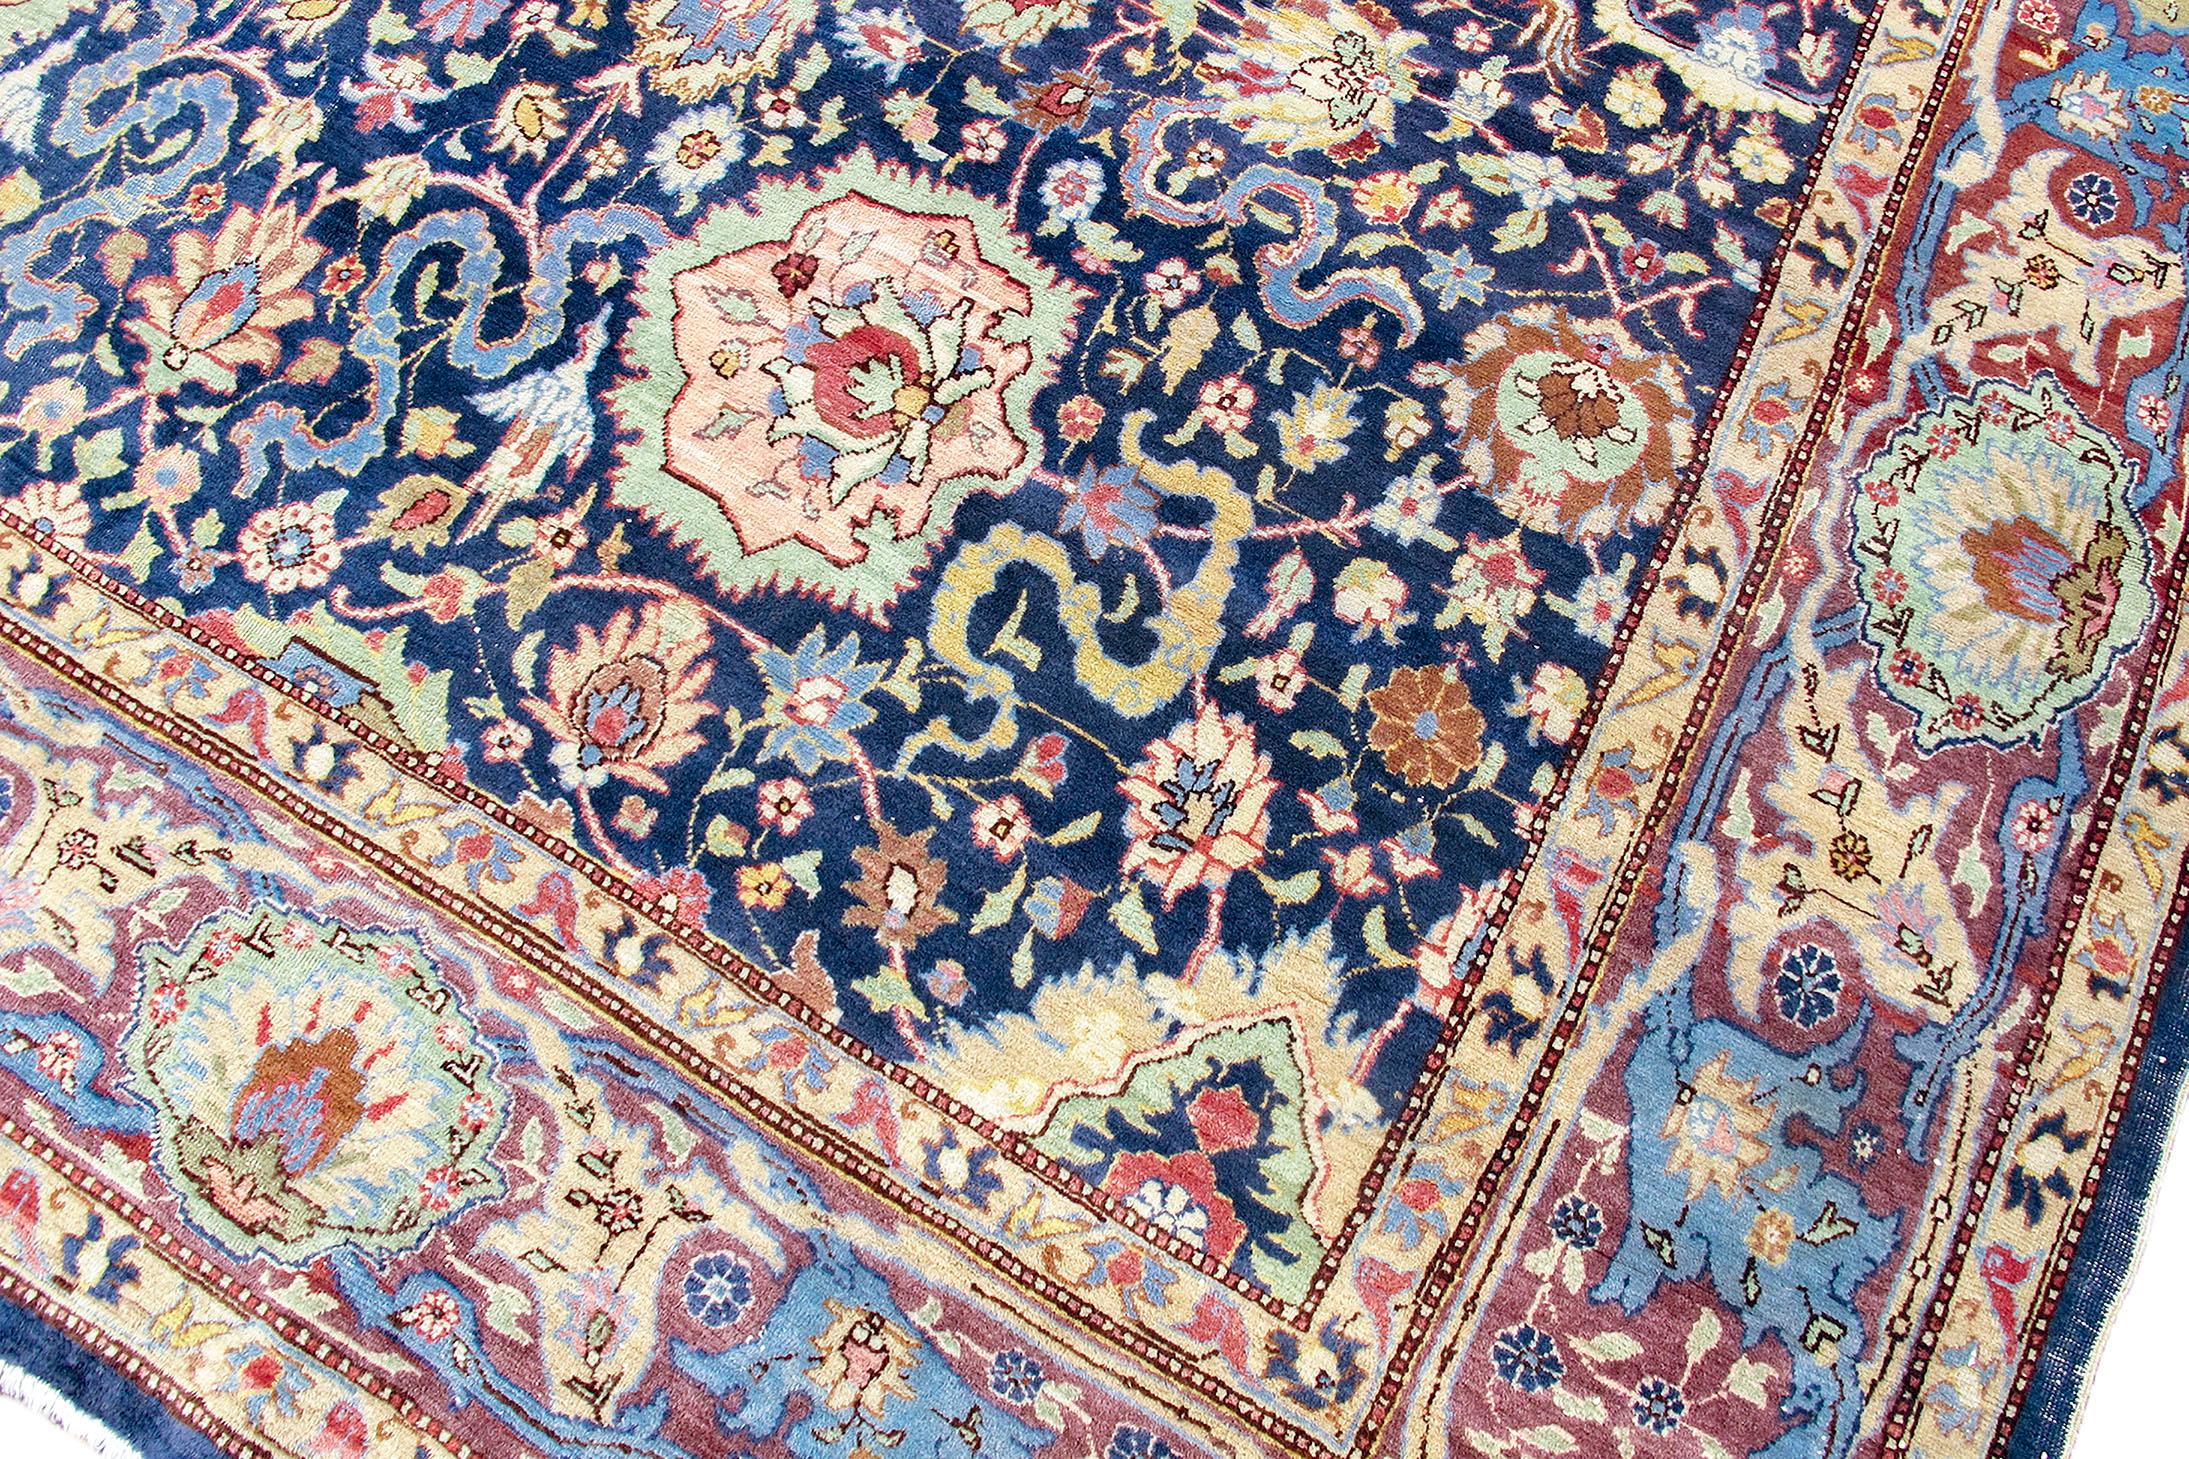 Antiker persischer Hereke-Teppich, um 1900

Dieser übergroße Hereke-Teppich aus der Türkei zeichnet ein kompliziertes Muster aus Palmetten und Wolkenbändern innerhalb eines Gitters auf einem indigoblauen Feld. Hereke-Stücke der Jahrhundertwende wie